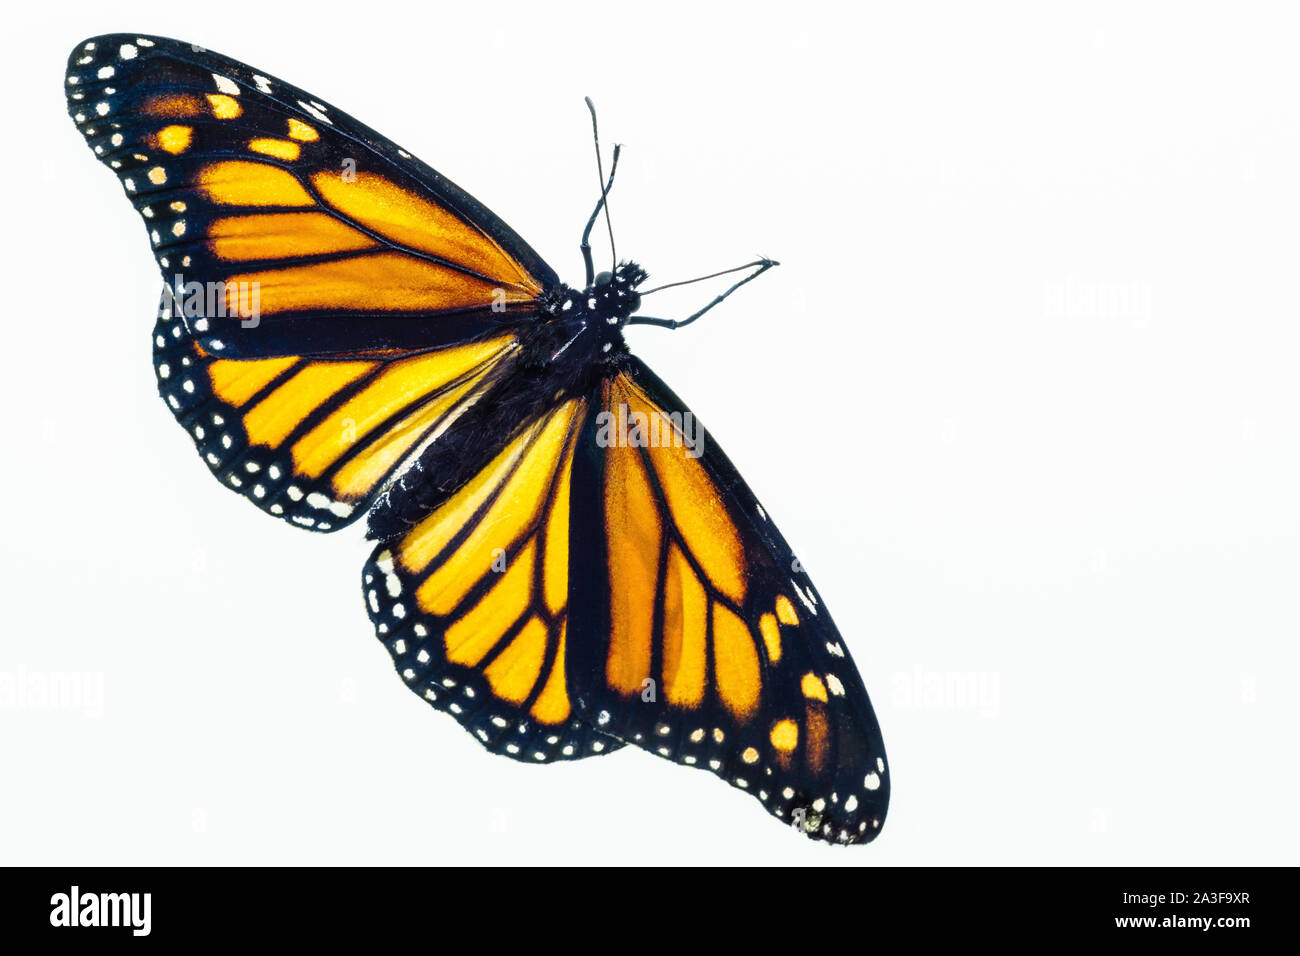 Vue de dessus d'un papillon monarque femme vivant. Les ailes sont ouvertes et elles sont apparues récemment à partir de la chrysalide. Banque D'Images